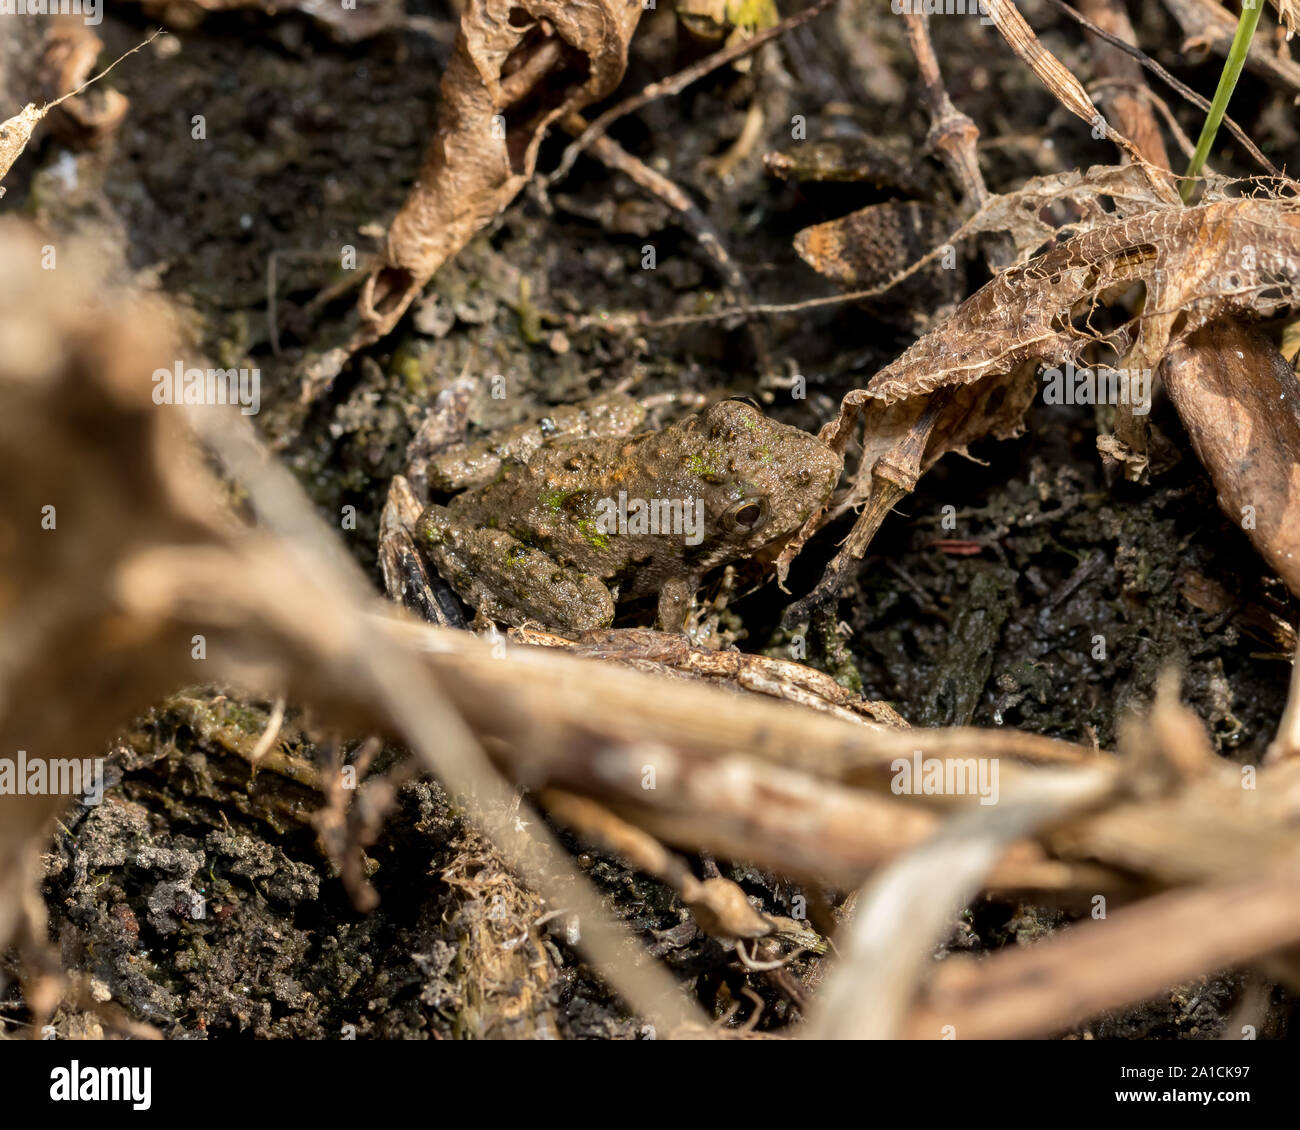 Blanchard's Cricket Frog, Tree Frog Arten, in seiner natürlichen Umgebung der Vegetation am Ufer eines Teiches. Stockfoto